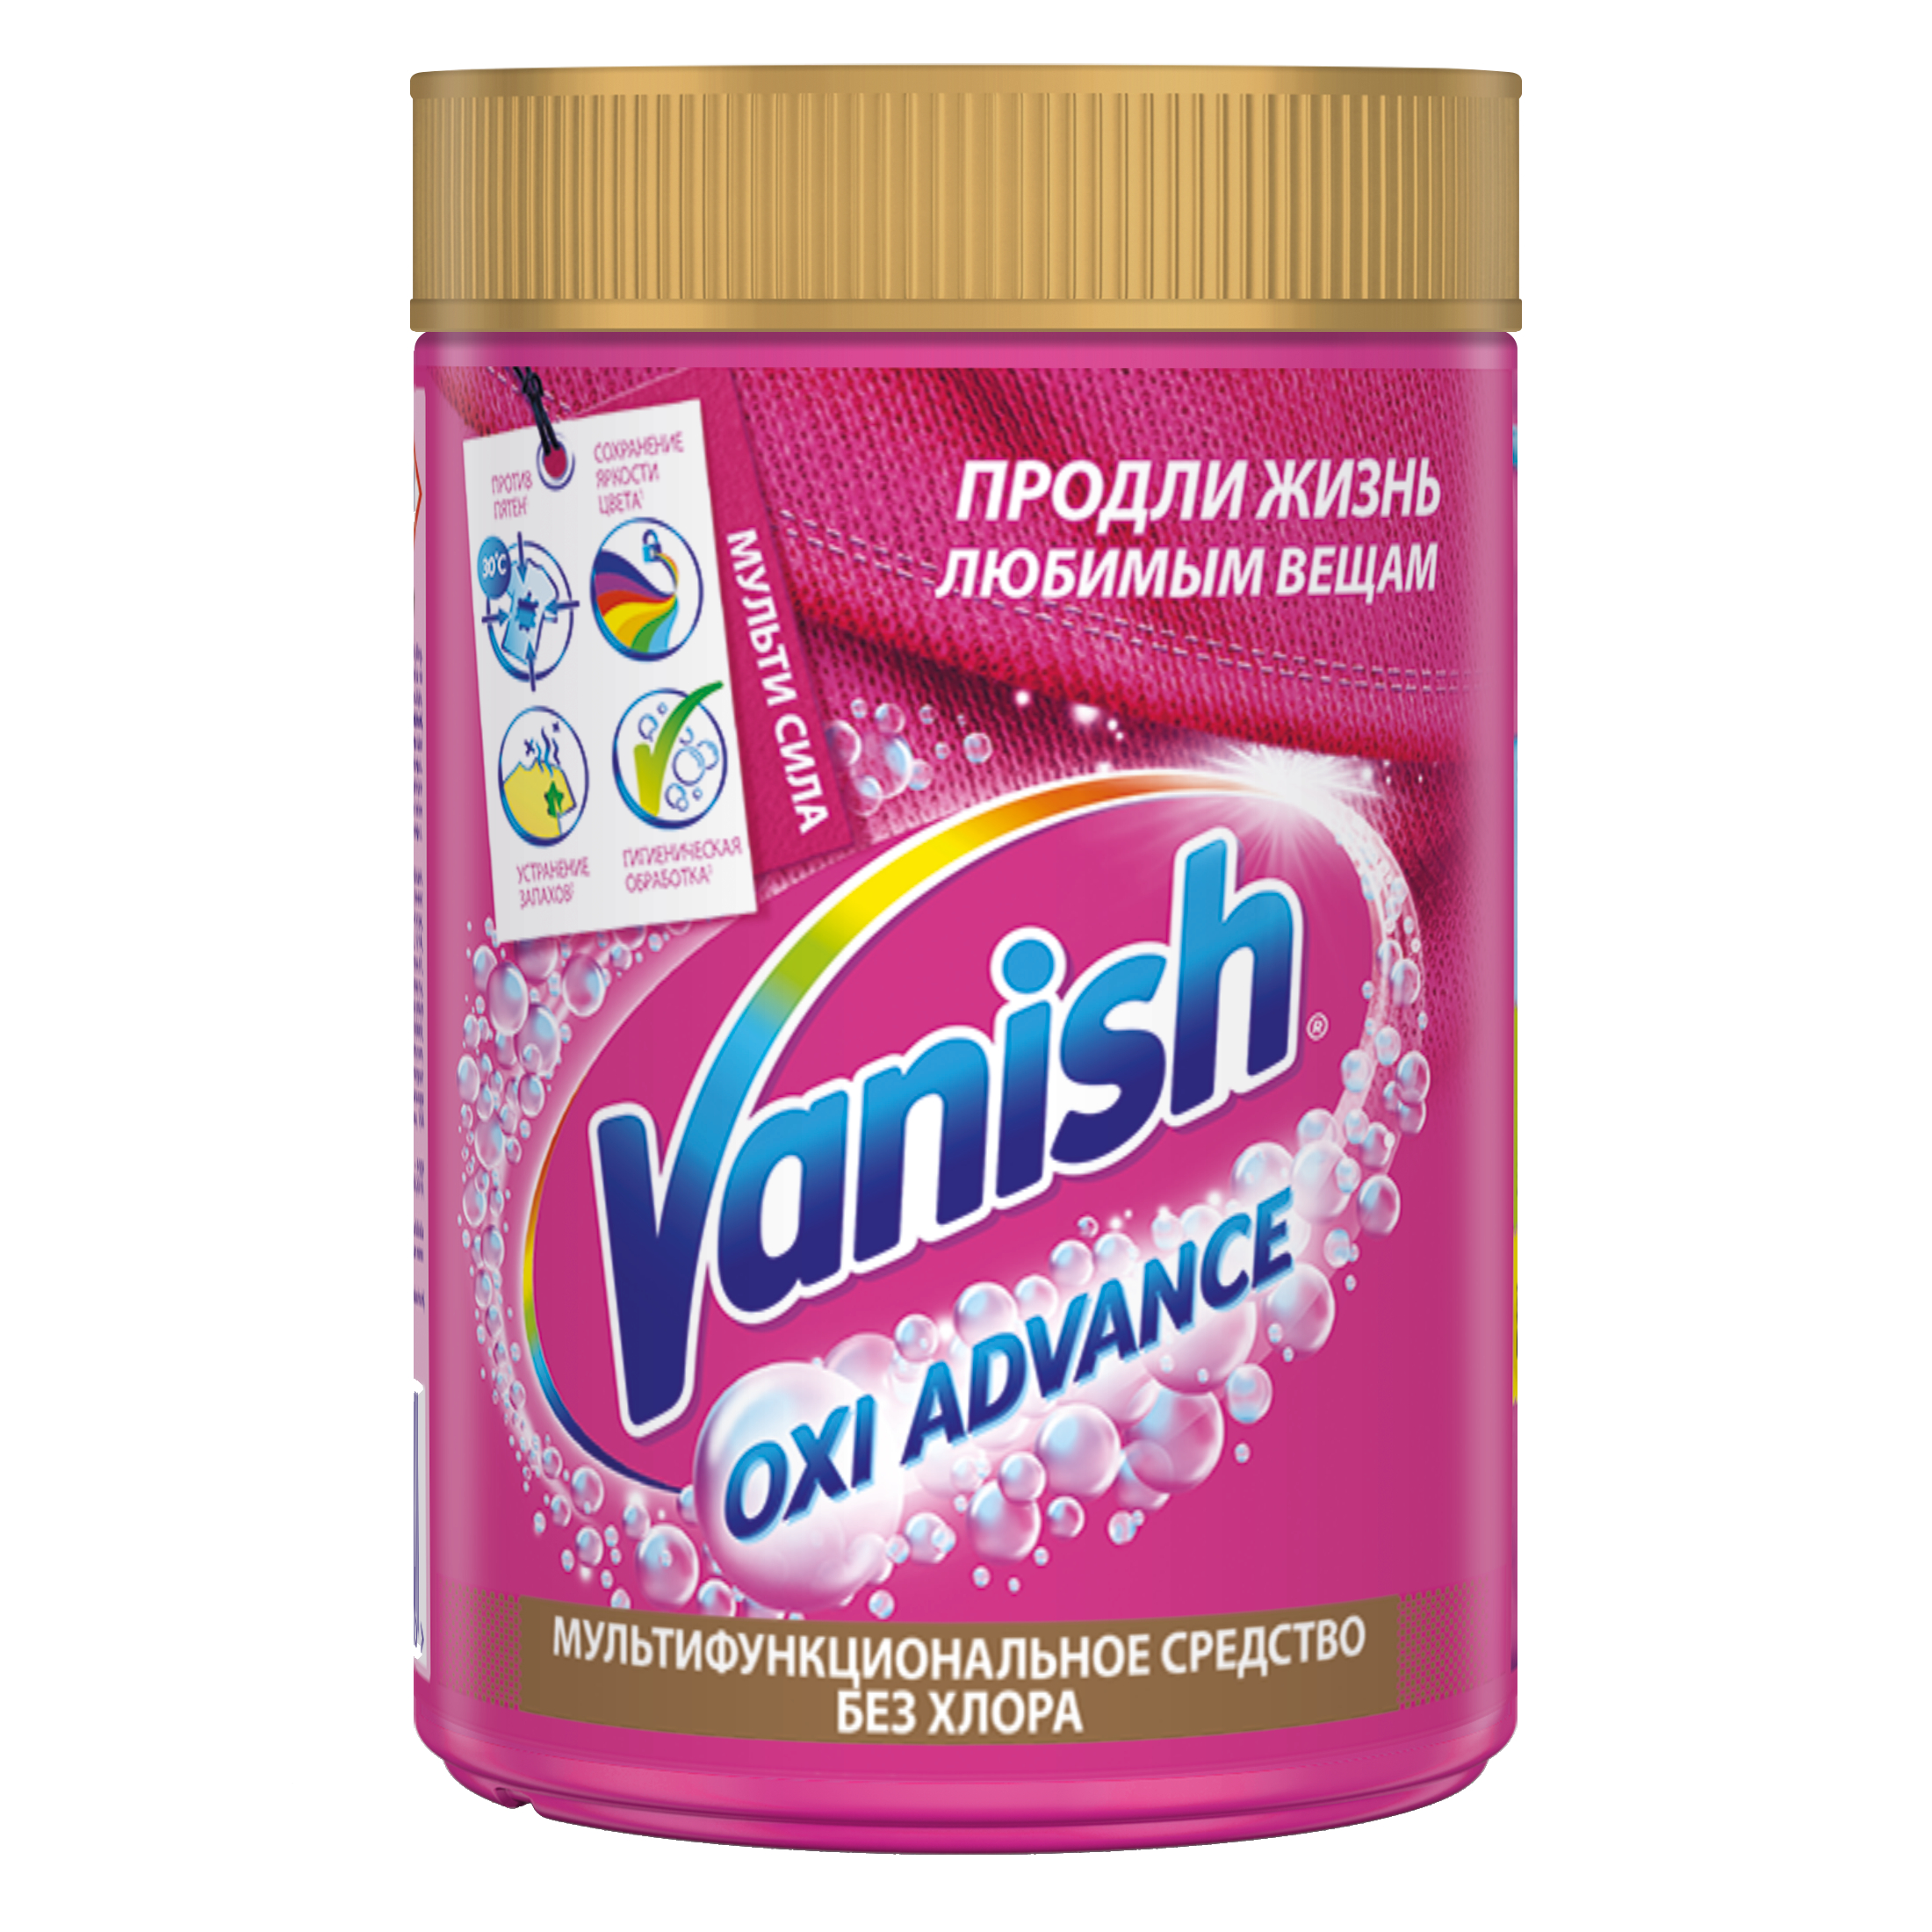 Пятновыводитель Vanish Orion для тканей порошок 800 г пятновыводитель vanish oxi action порошок 1 кг